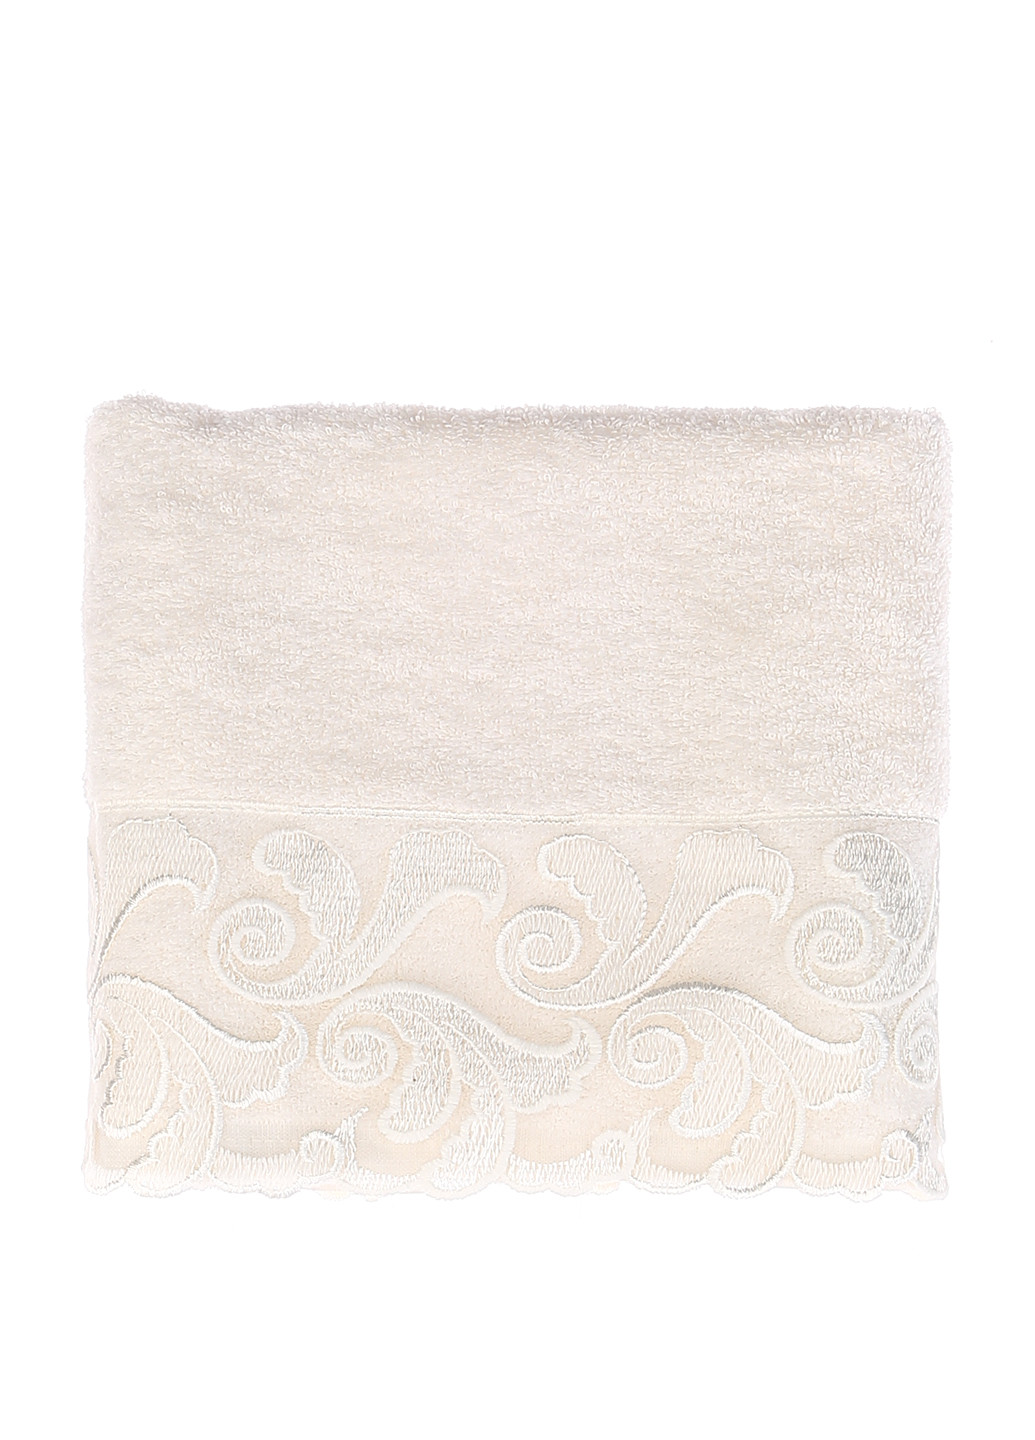 Gurdal полотенце, 50х90 см однотонный белый производство - Турция